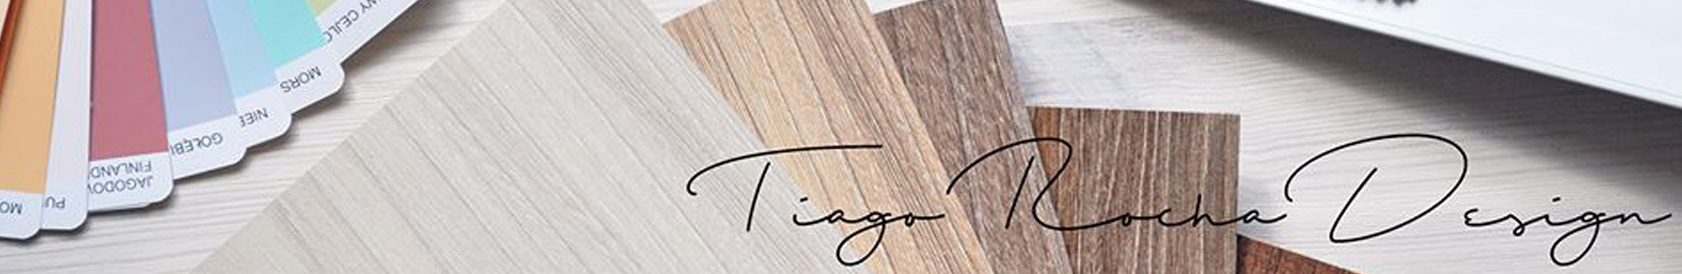 Banner de perfil de Tiago Rocha Design